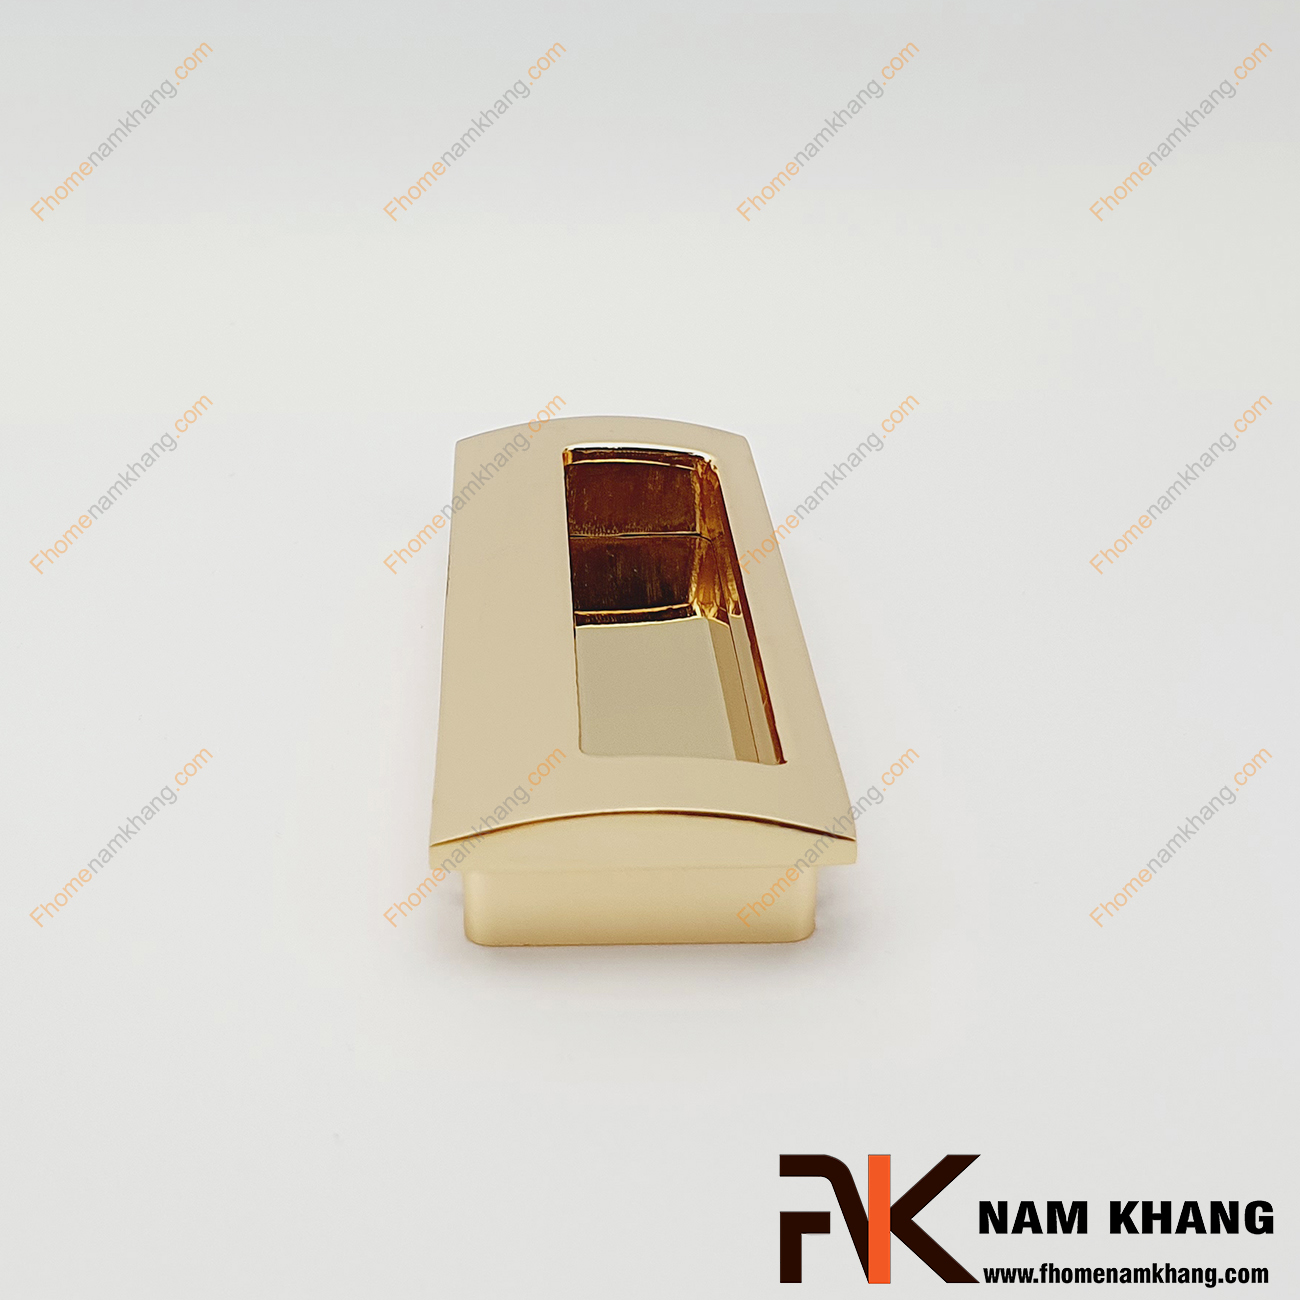  Tay nắm âm tủ màu vàng bóng NK106-V lắp đặt âm vào cánh cửa tủ và có thêm 2 vít định vị giúp cho sự kết nối bền chặt hơn, đảm bảo an toàn khi sử dụng và sự tiện lợi của tay nắm.